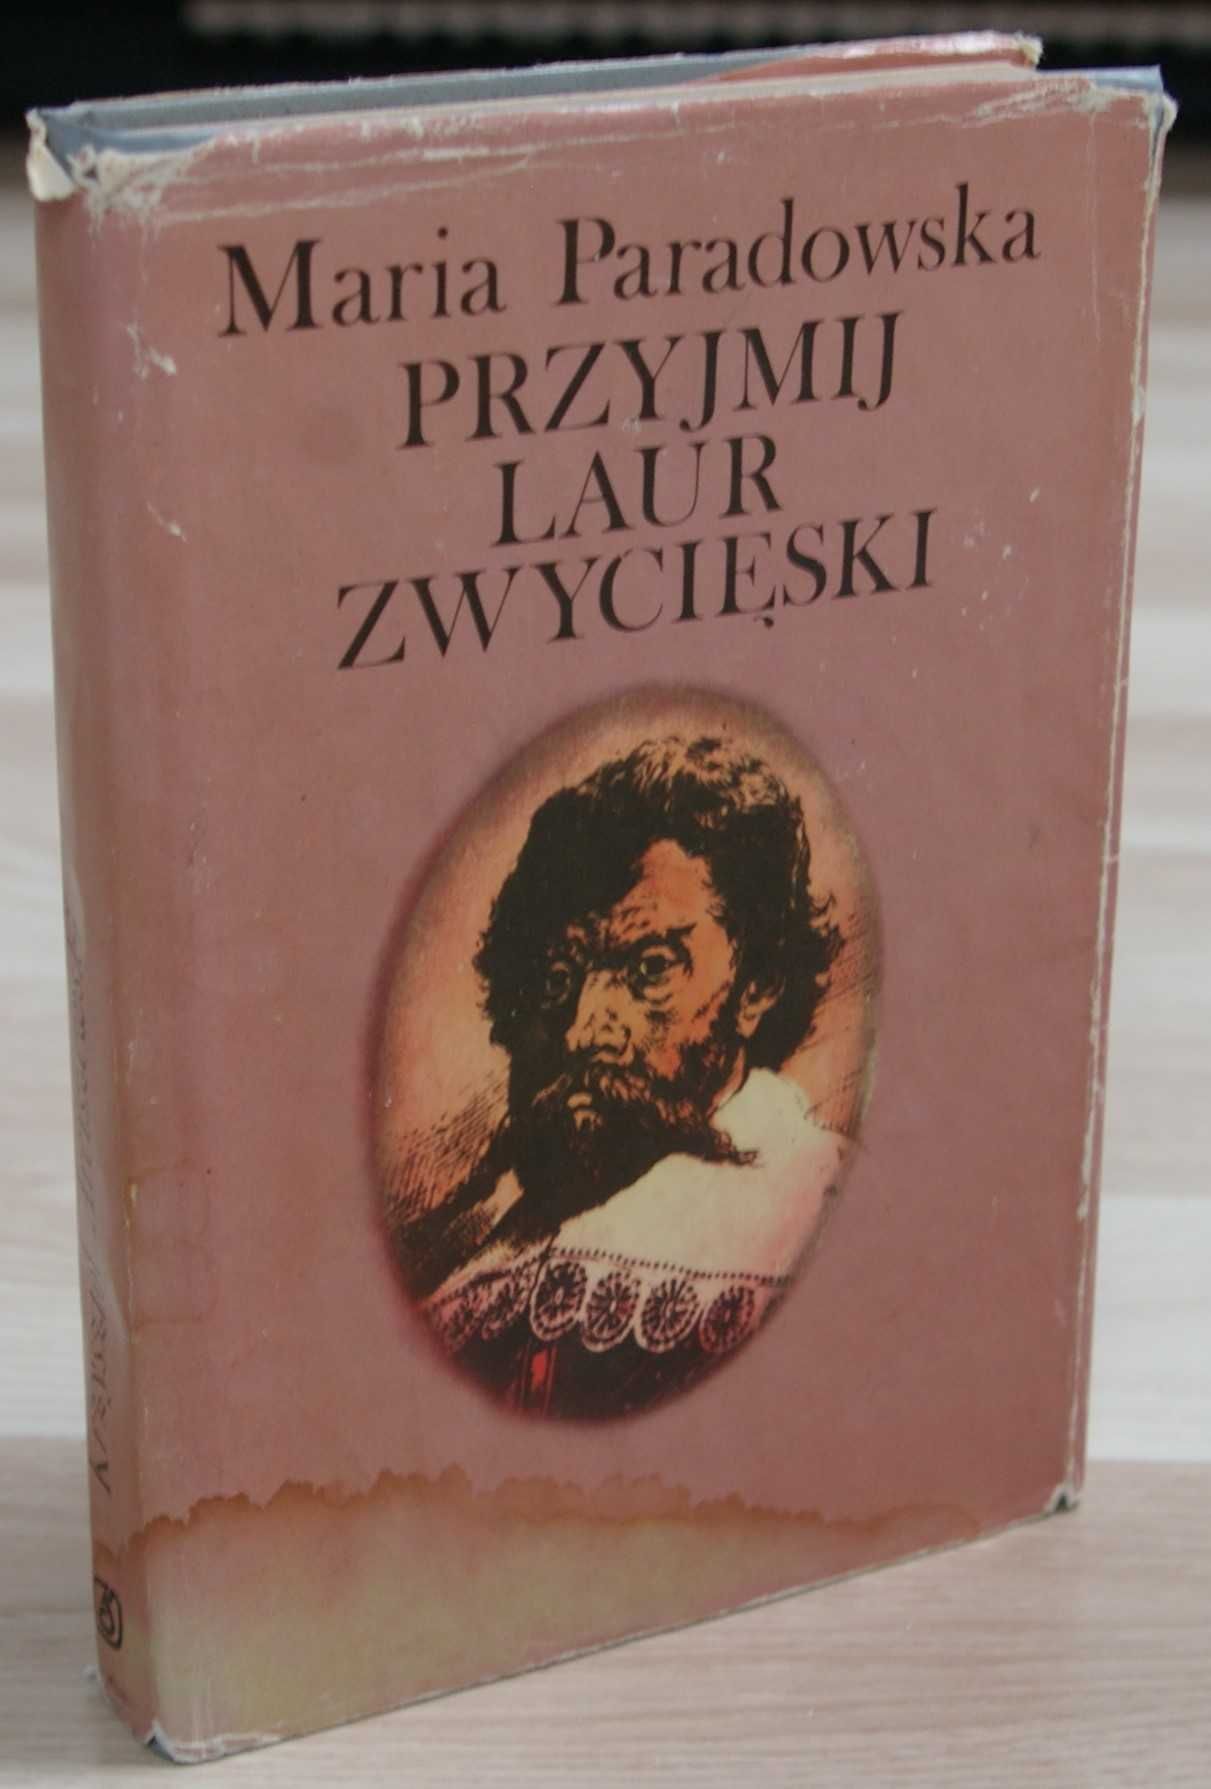 Maria Paradowska, Przyjmij laur zwycięski, Wyd. Śląsk, 1987